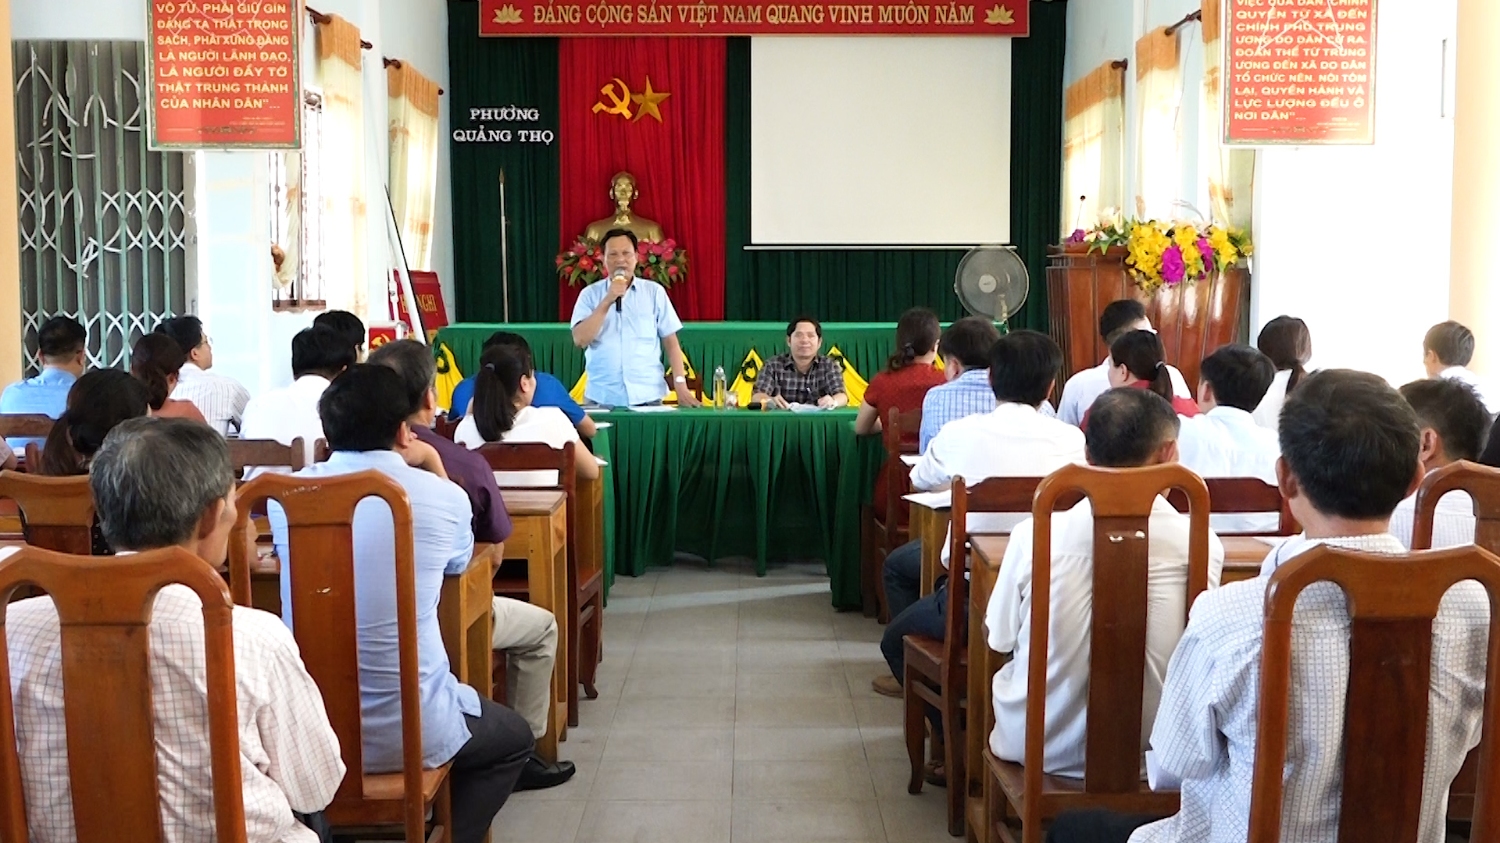 Lãnh đạo thị xã Ba Đồn đối thoại với người dân phường Quảng Thọ.